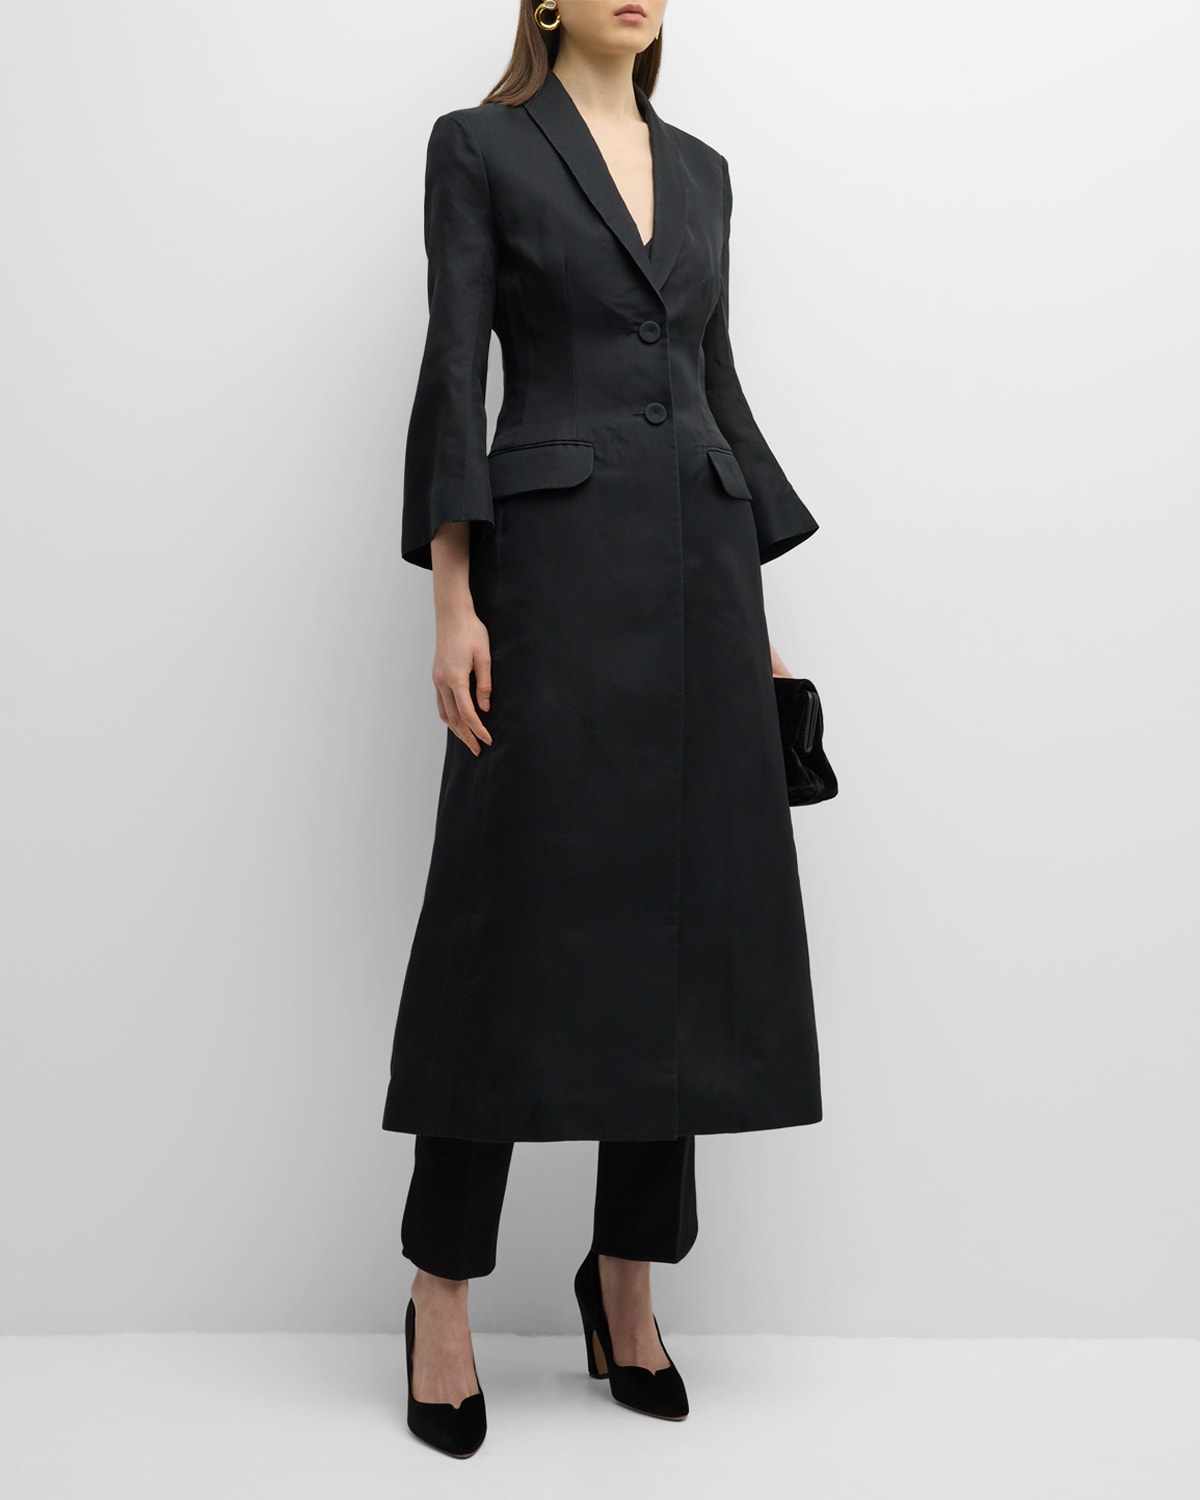 Designer Coats for Women